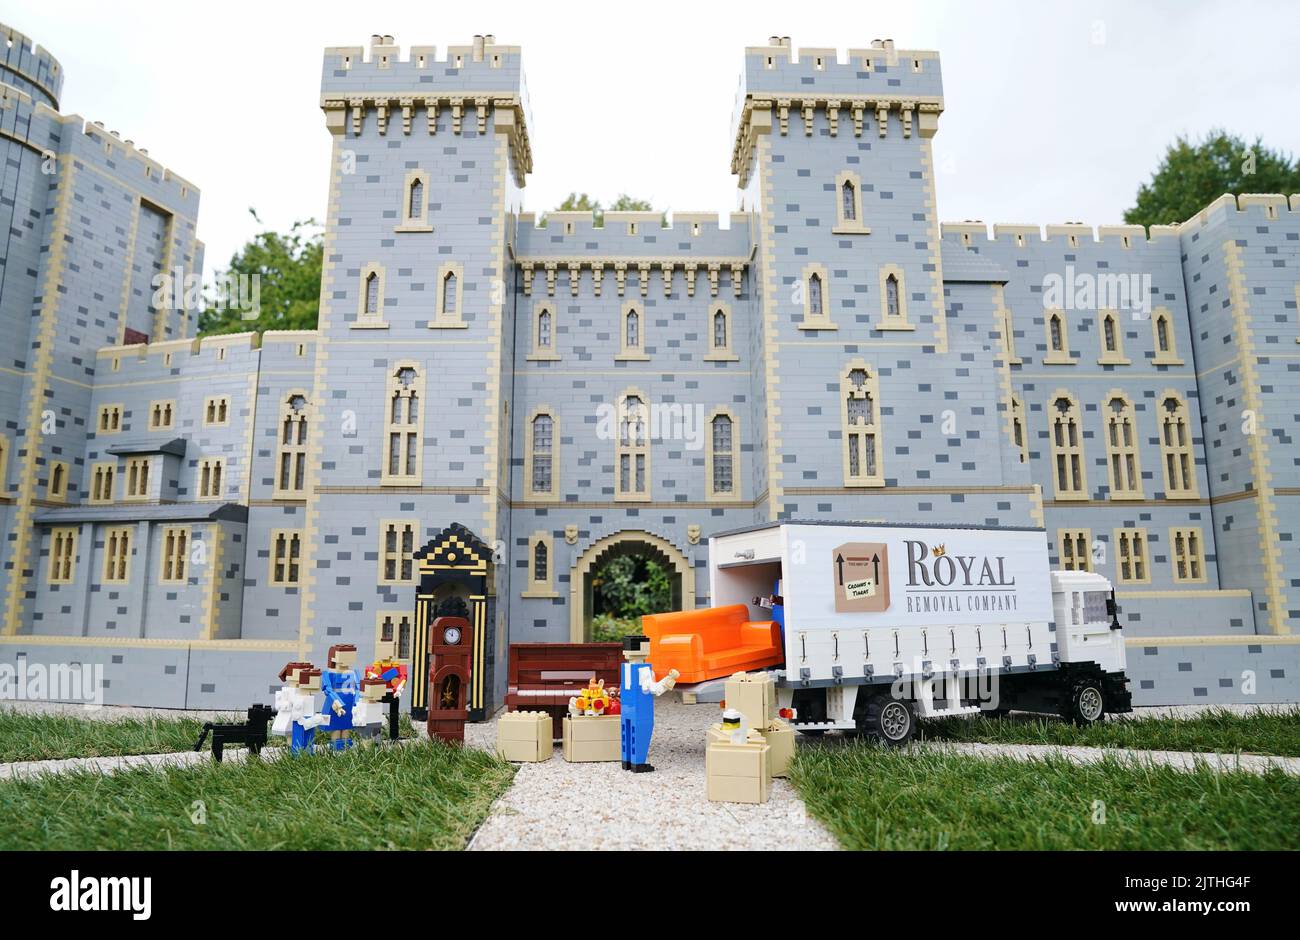 Taylor Swift: Lego Portrait Revealed at Legoland Windsor